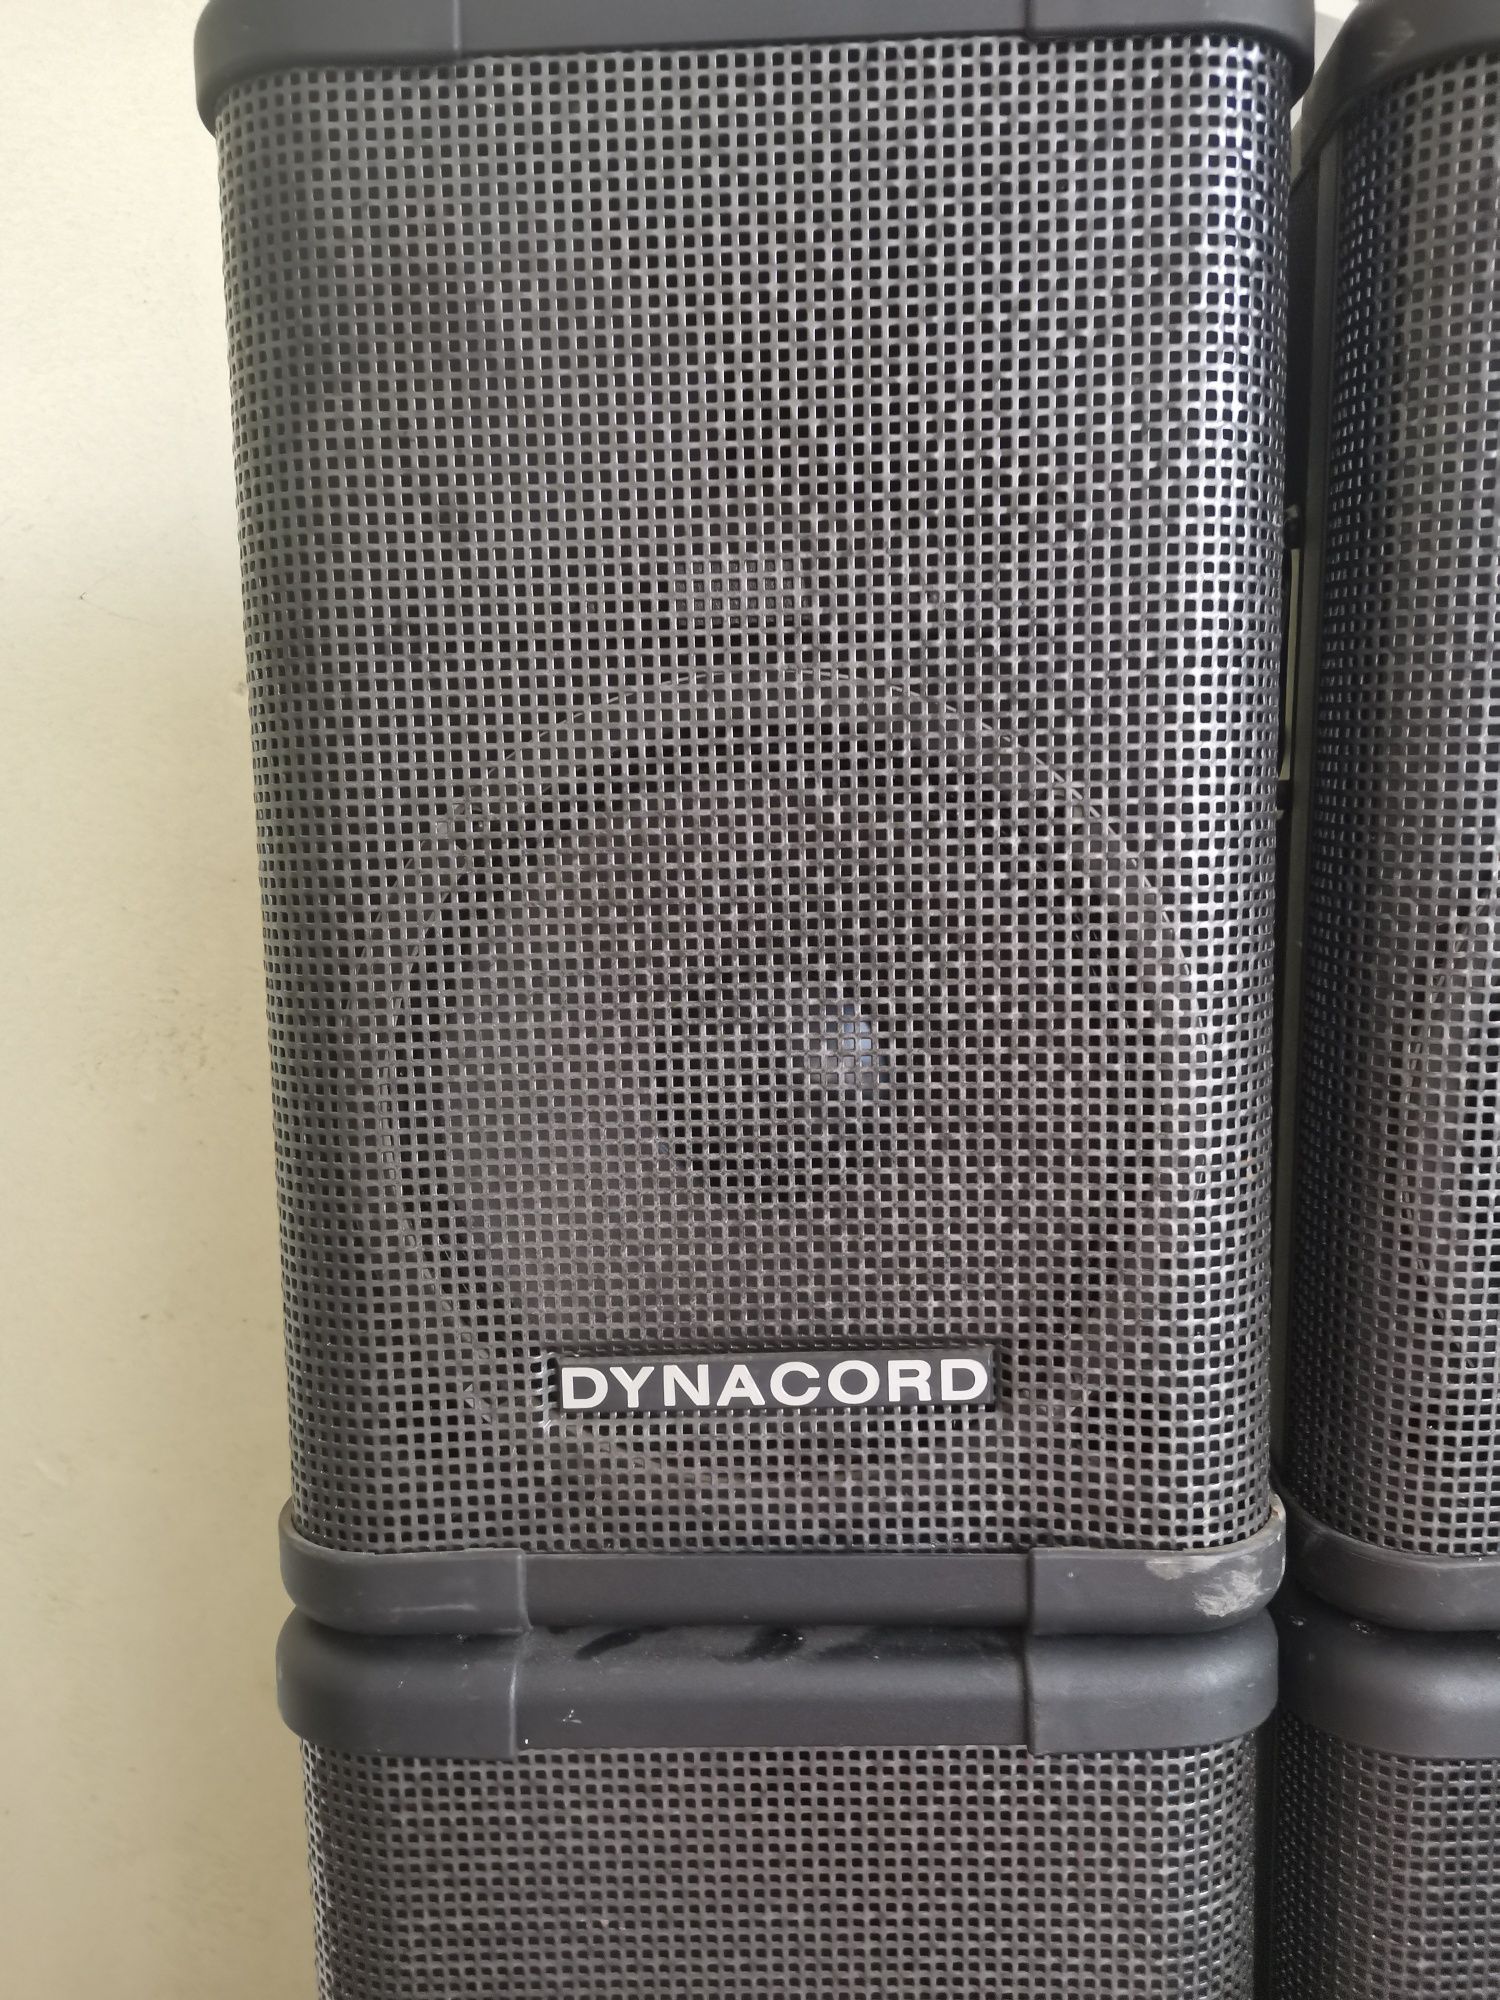 Dynacord SRX 10.2 внос от Холандия във префектно състоиание